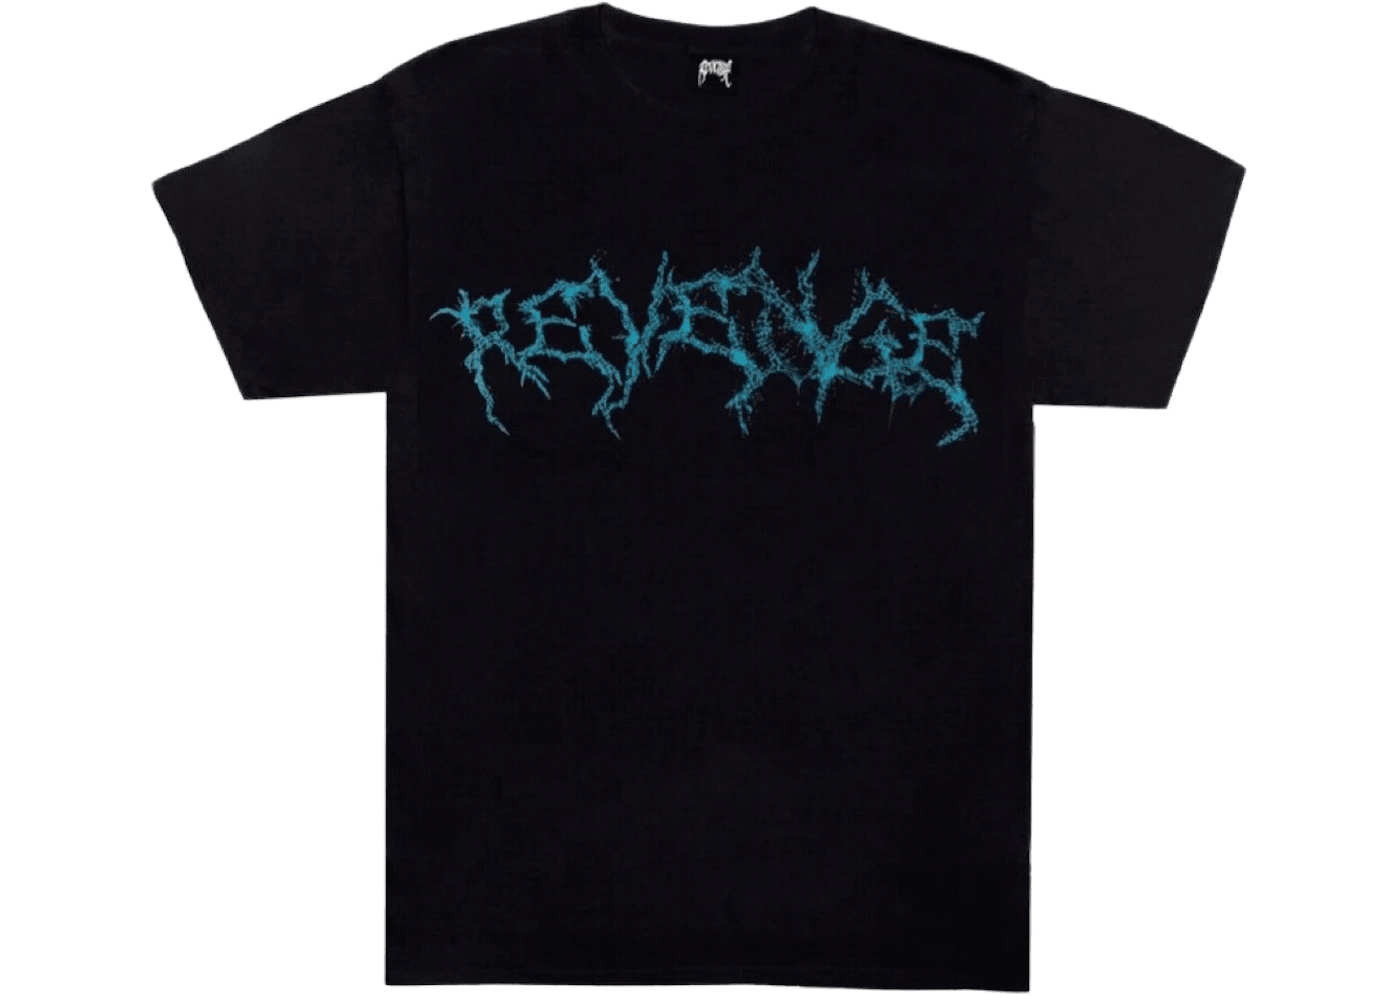 Revenge Lightning Spider T-shirt Black/Blue